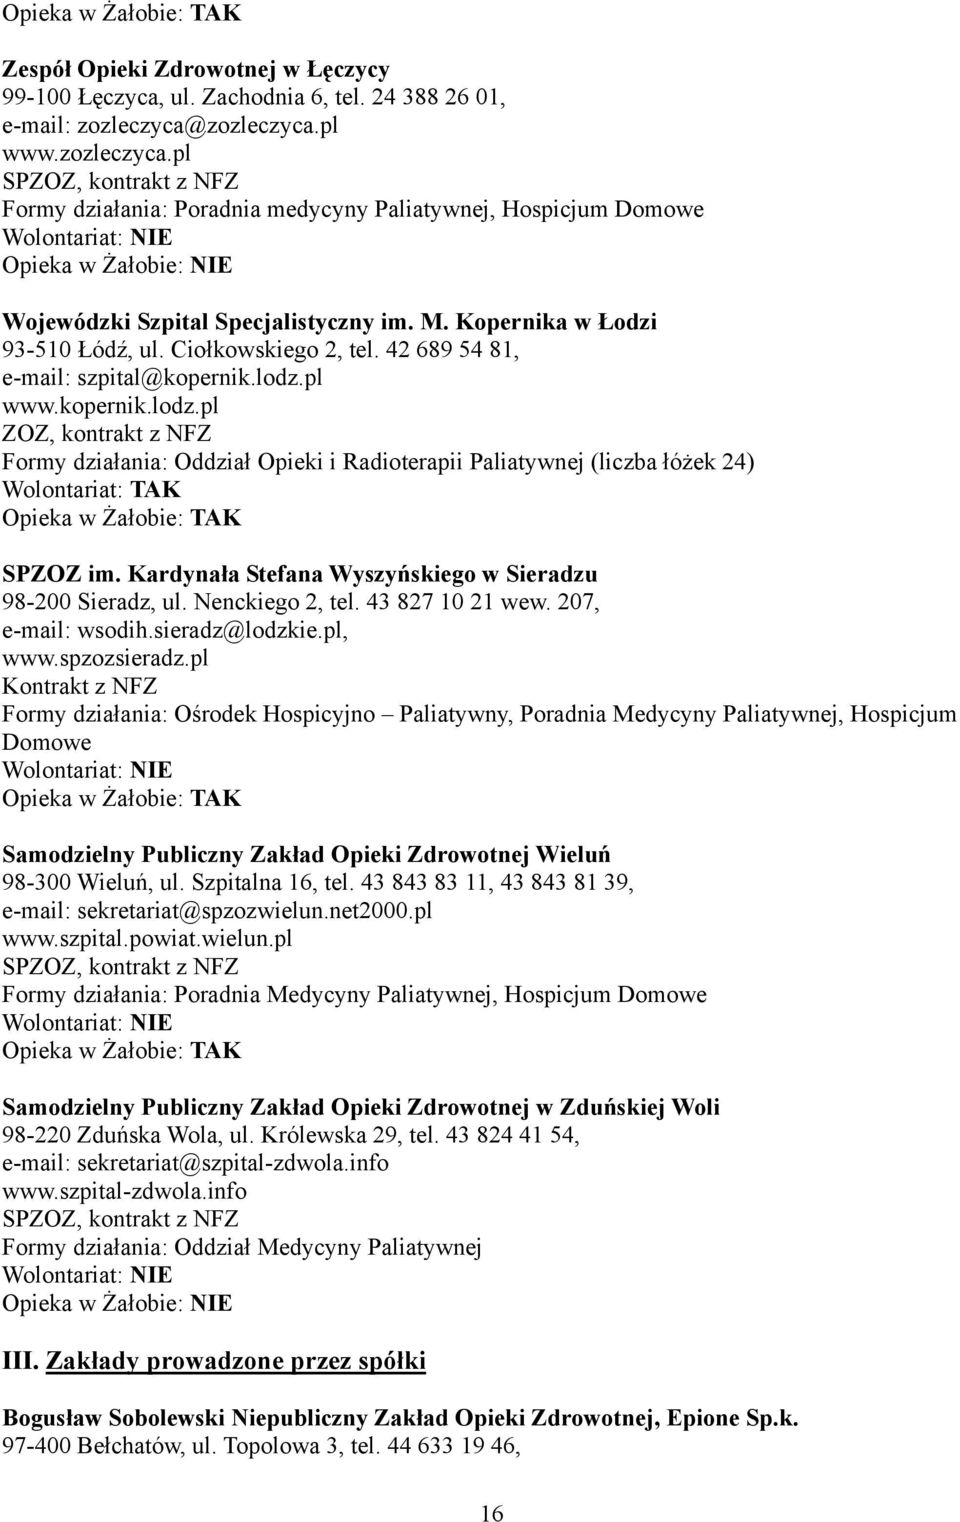 42 689 54 81, e-mail: szpital@kopernik.lodz.pl www.kopernik.lodz.pl ZOZ, Formy działania: Oddział Opieki i Radioterapii Paliatywnej (liczba łóżek 24) SPZOZ im.